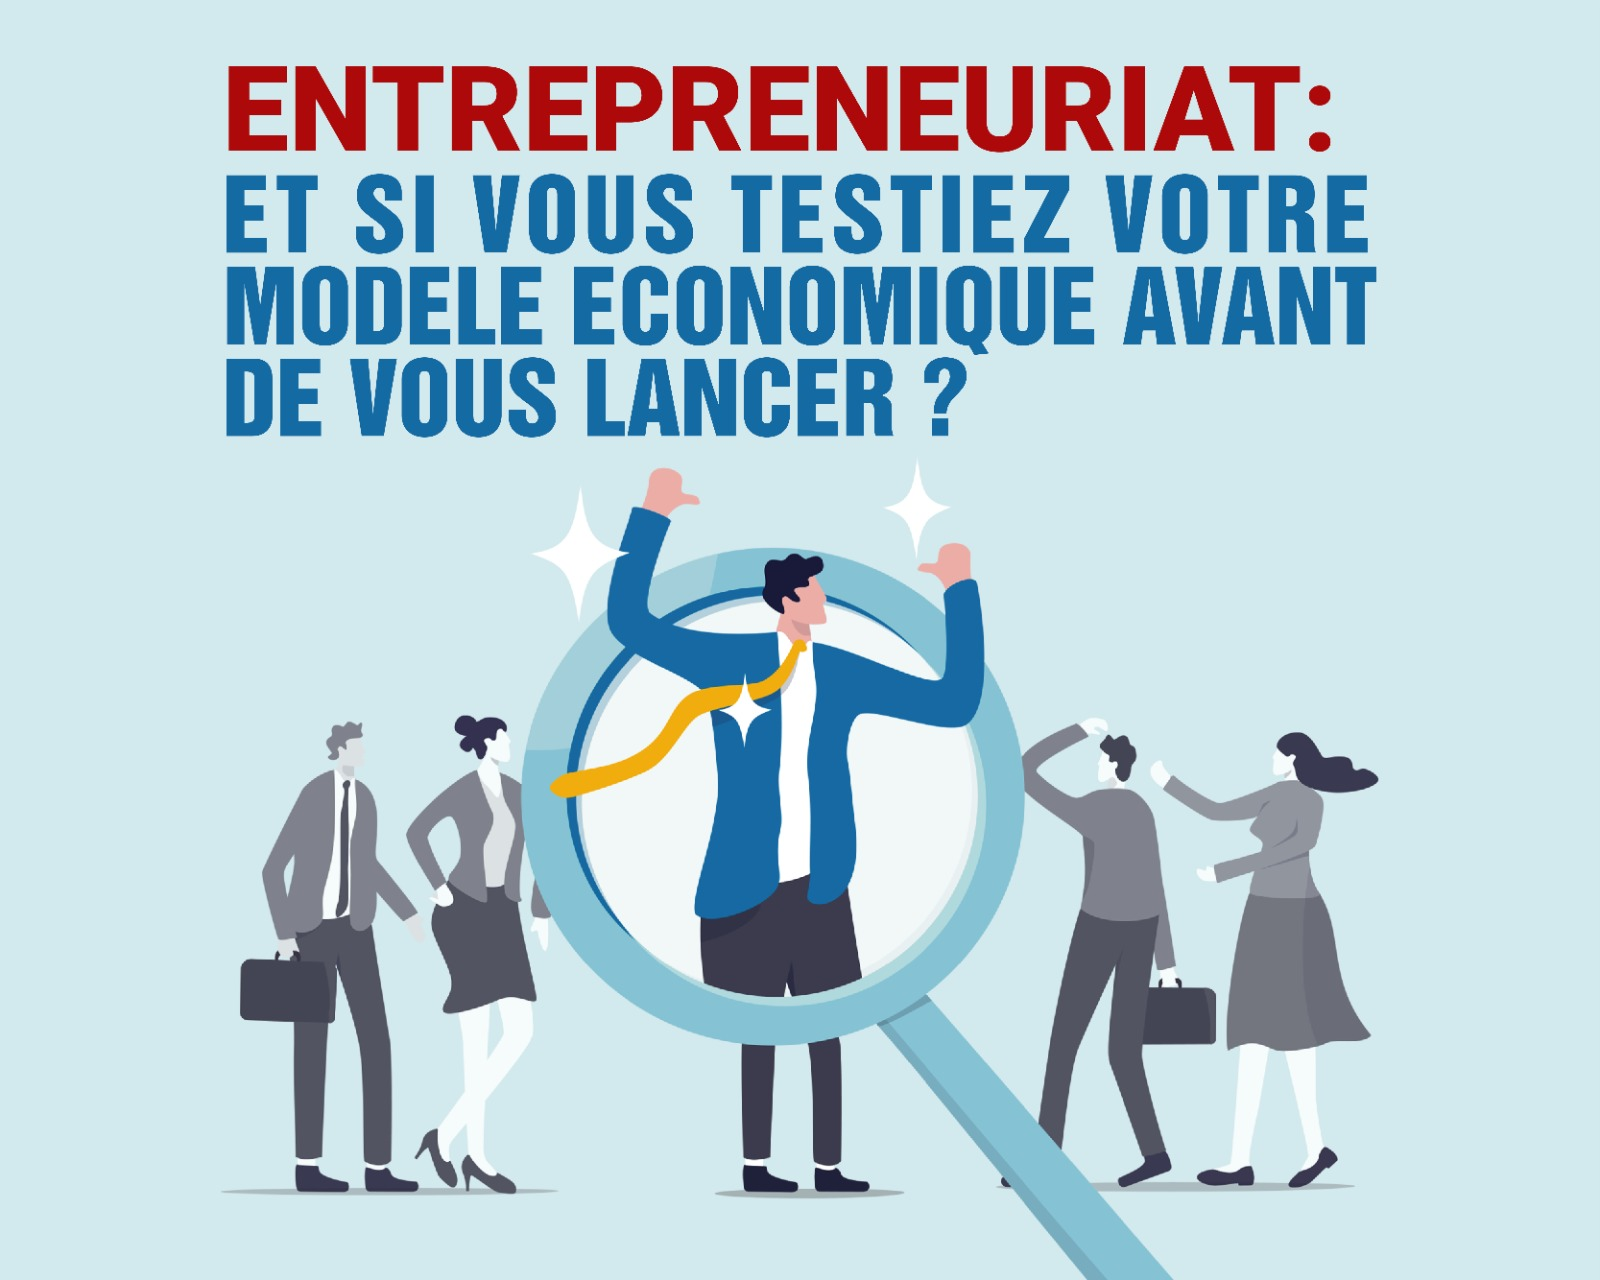 Entrepreneuriat : et si vous testiez votre modèle économique avant de vous lancer ?